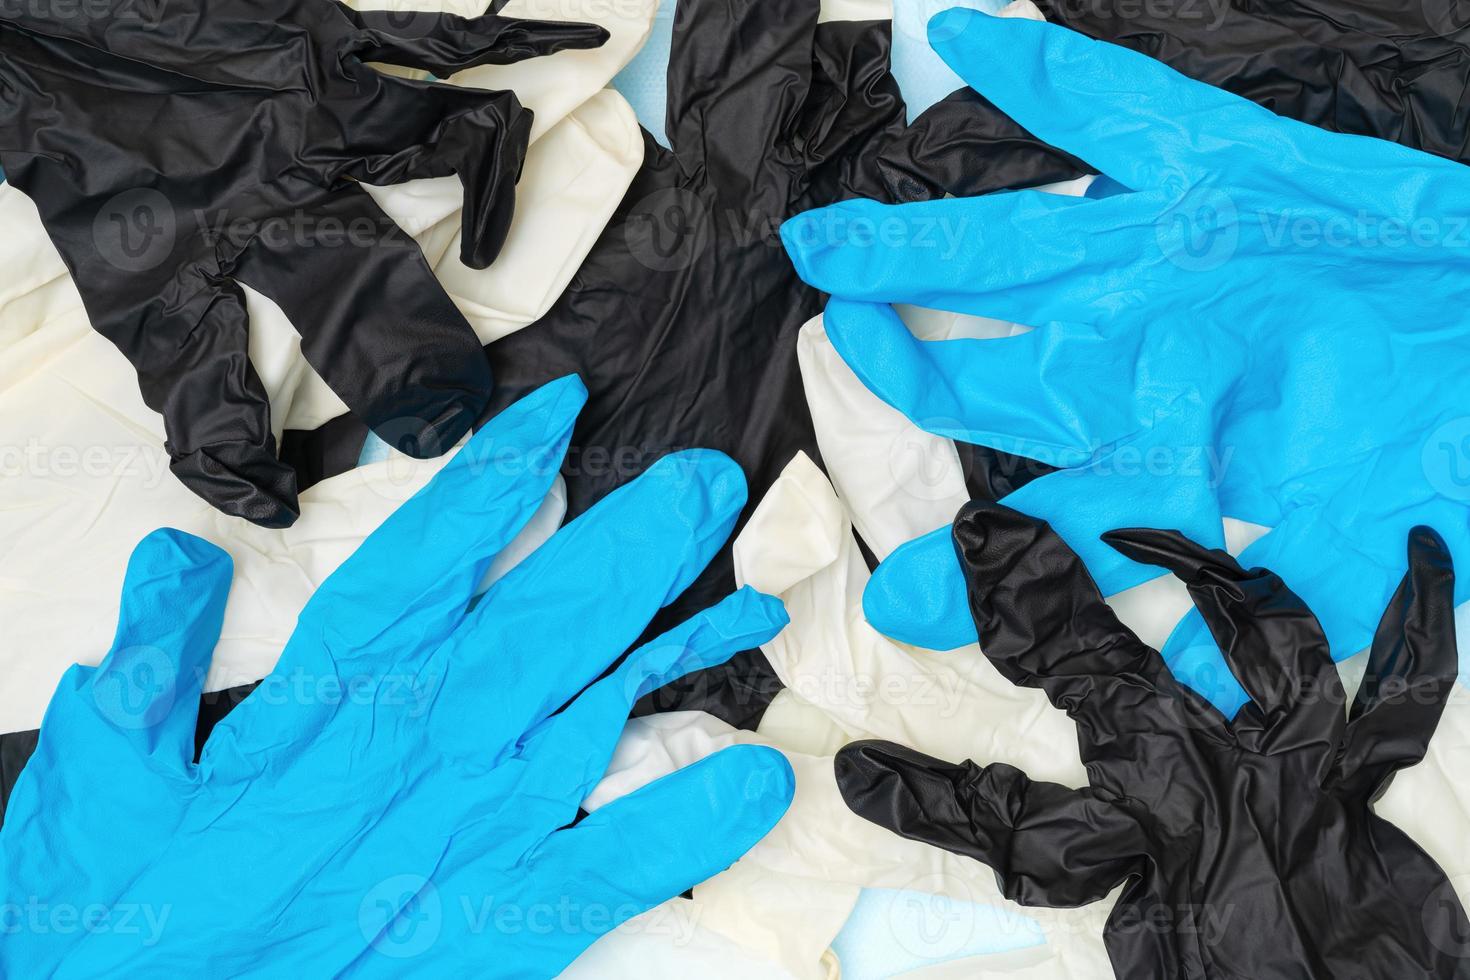 veel van bescherming elastisch chirurgisch handschoenen wit, zwart en blauw kleuren. vlak leggen detailopname visie van hygiëne en beschermend handschoenen foto